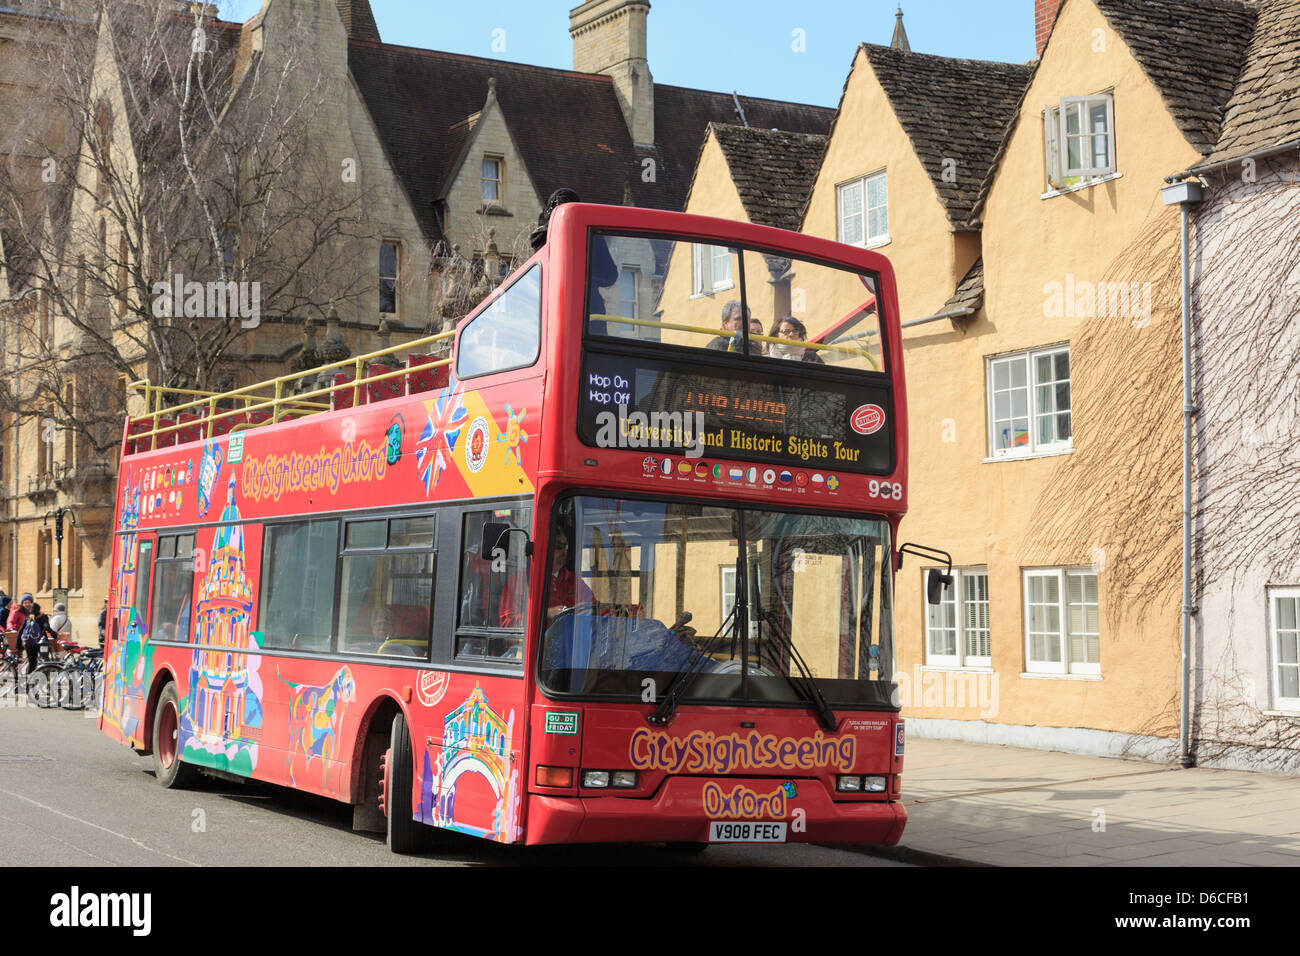 Rote Hop-on-Hop-off Touristen Sightseeing Bus auf Universität und historischen Sehenswürdigkeiten Tour durch die Stadt. Oxford, Oxfordshire, England, Großbritannien, Großbritannien Stockfoto